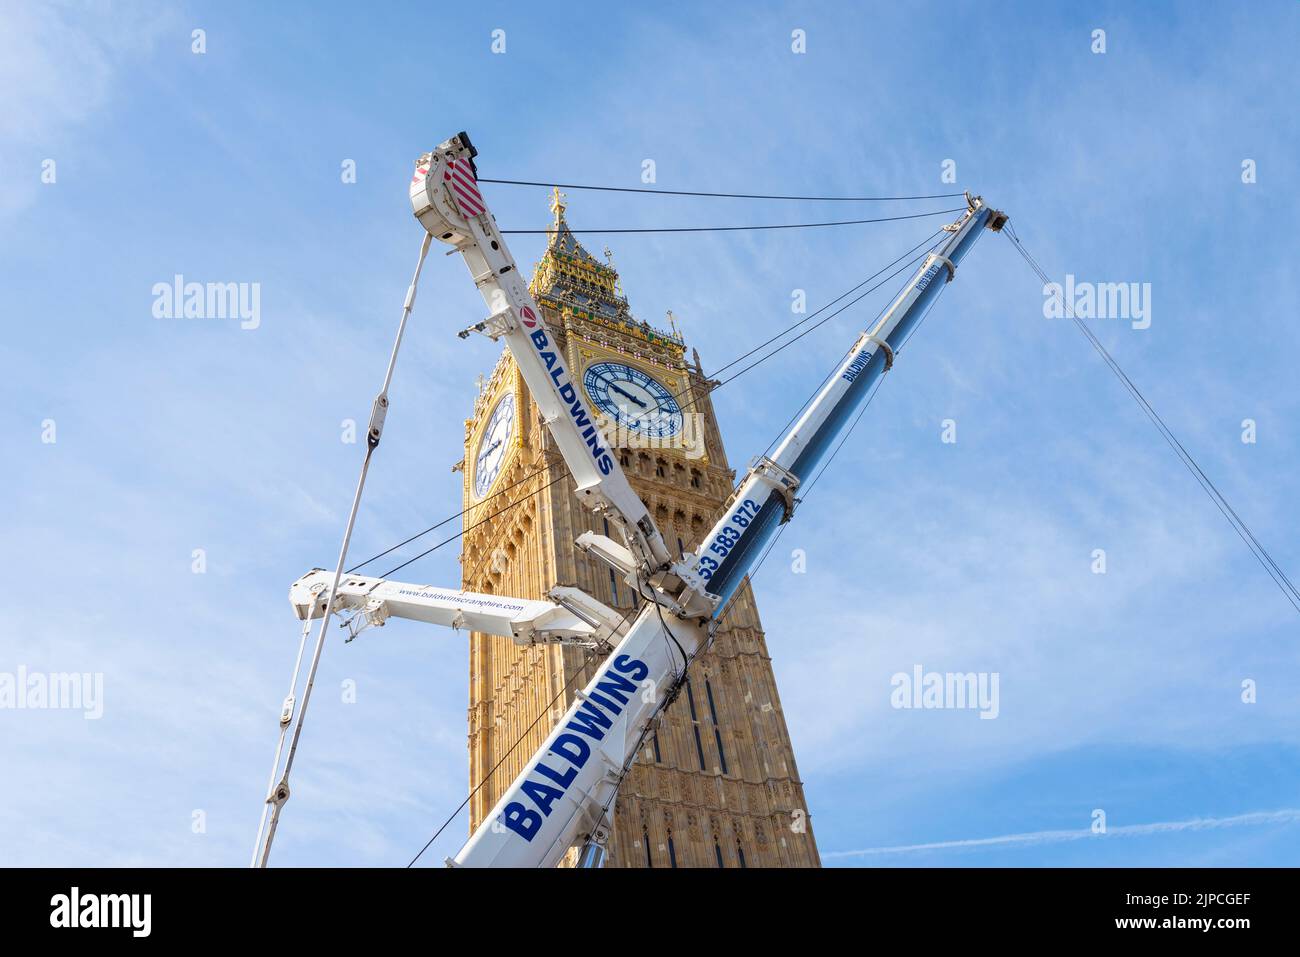 Gran grúa Baldwin que retira las secciones finales de andamiaje de la Torre Elizabeth, Big Ben, del Palacio de Westminster, Londres, Reino Unido Foto de stock